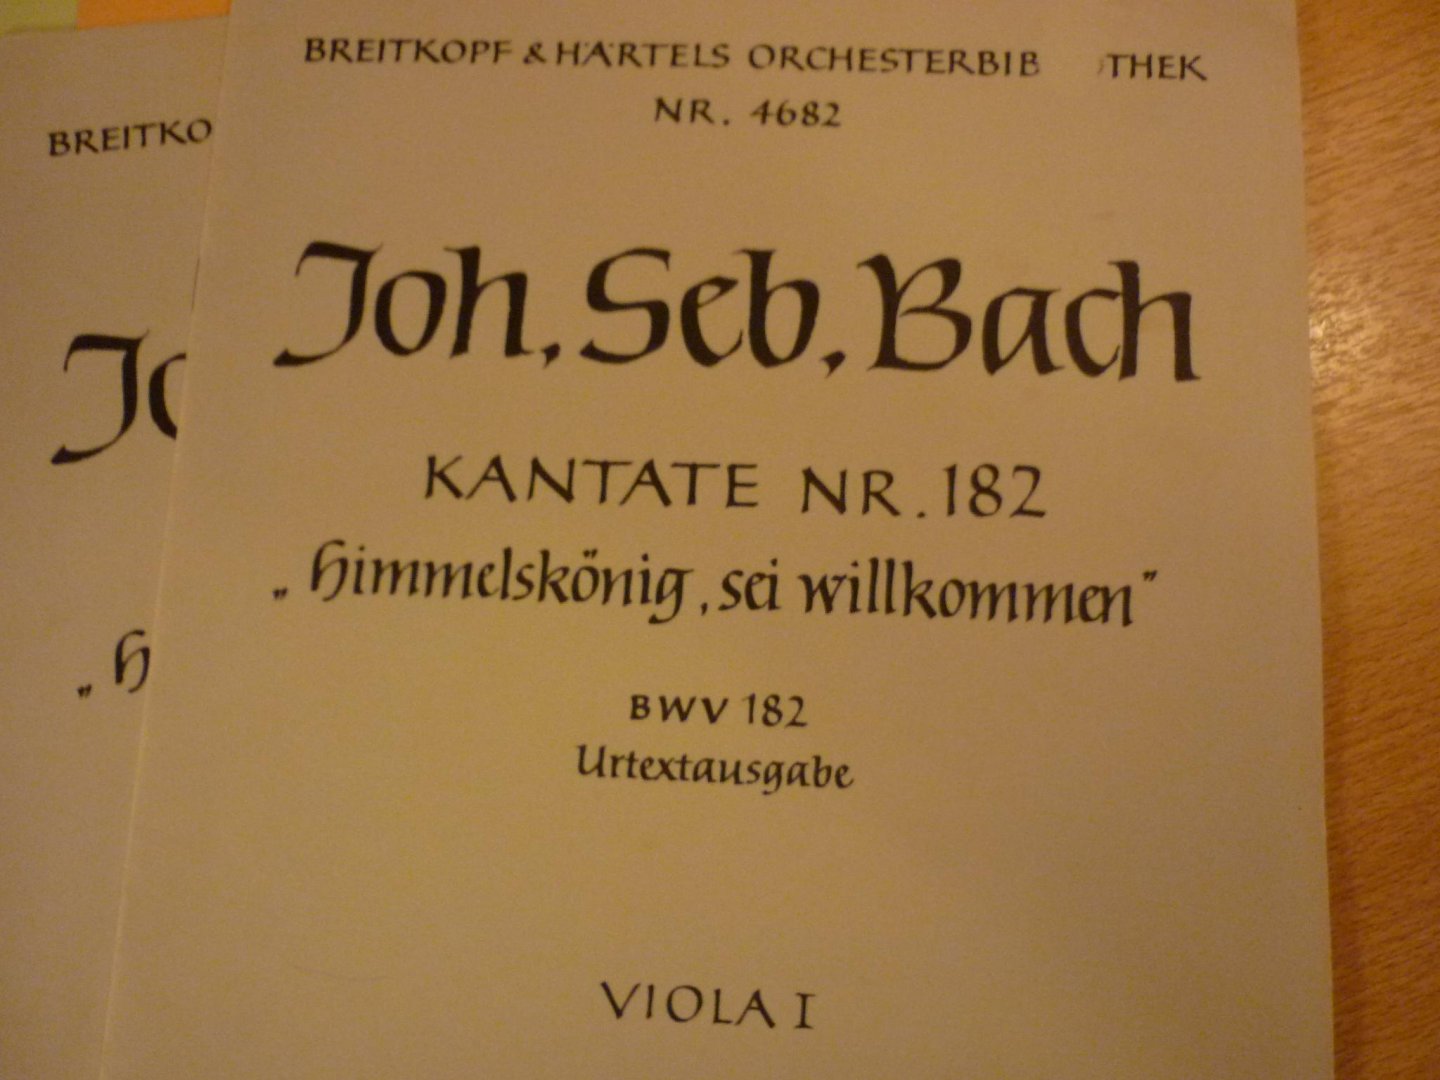 Bach; J.S. - Kantate Nr. 182 "Himmelskonig, sei willkommen"; BWV 182; Aparte boeken voor; Flote / Blockflote; 3 x Violine; 2 x Violoncello und Kontrabass; Urtextausgabe: 2 x Viola I en 2 x Viola II